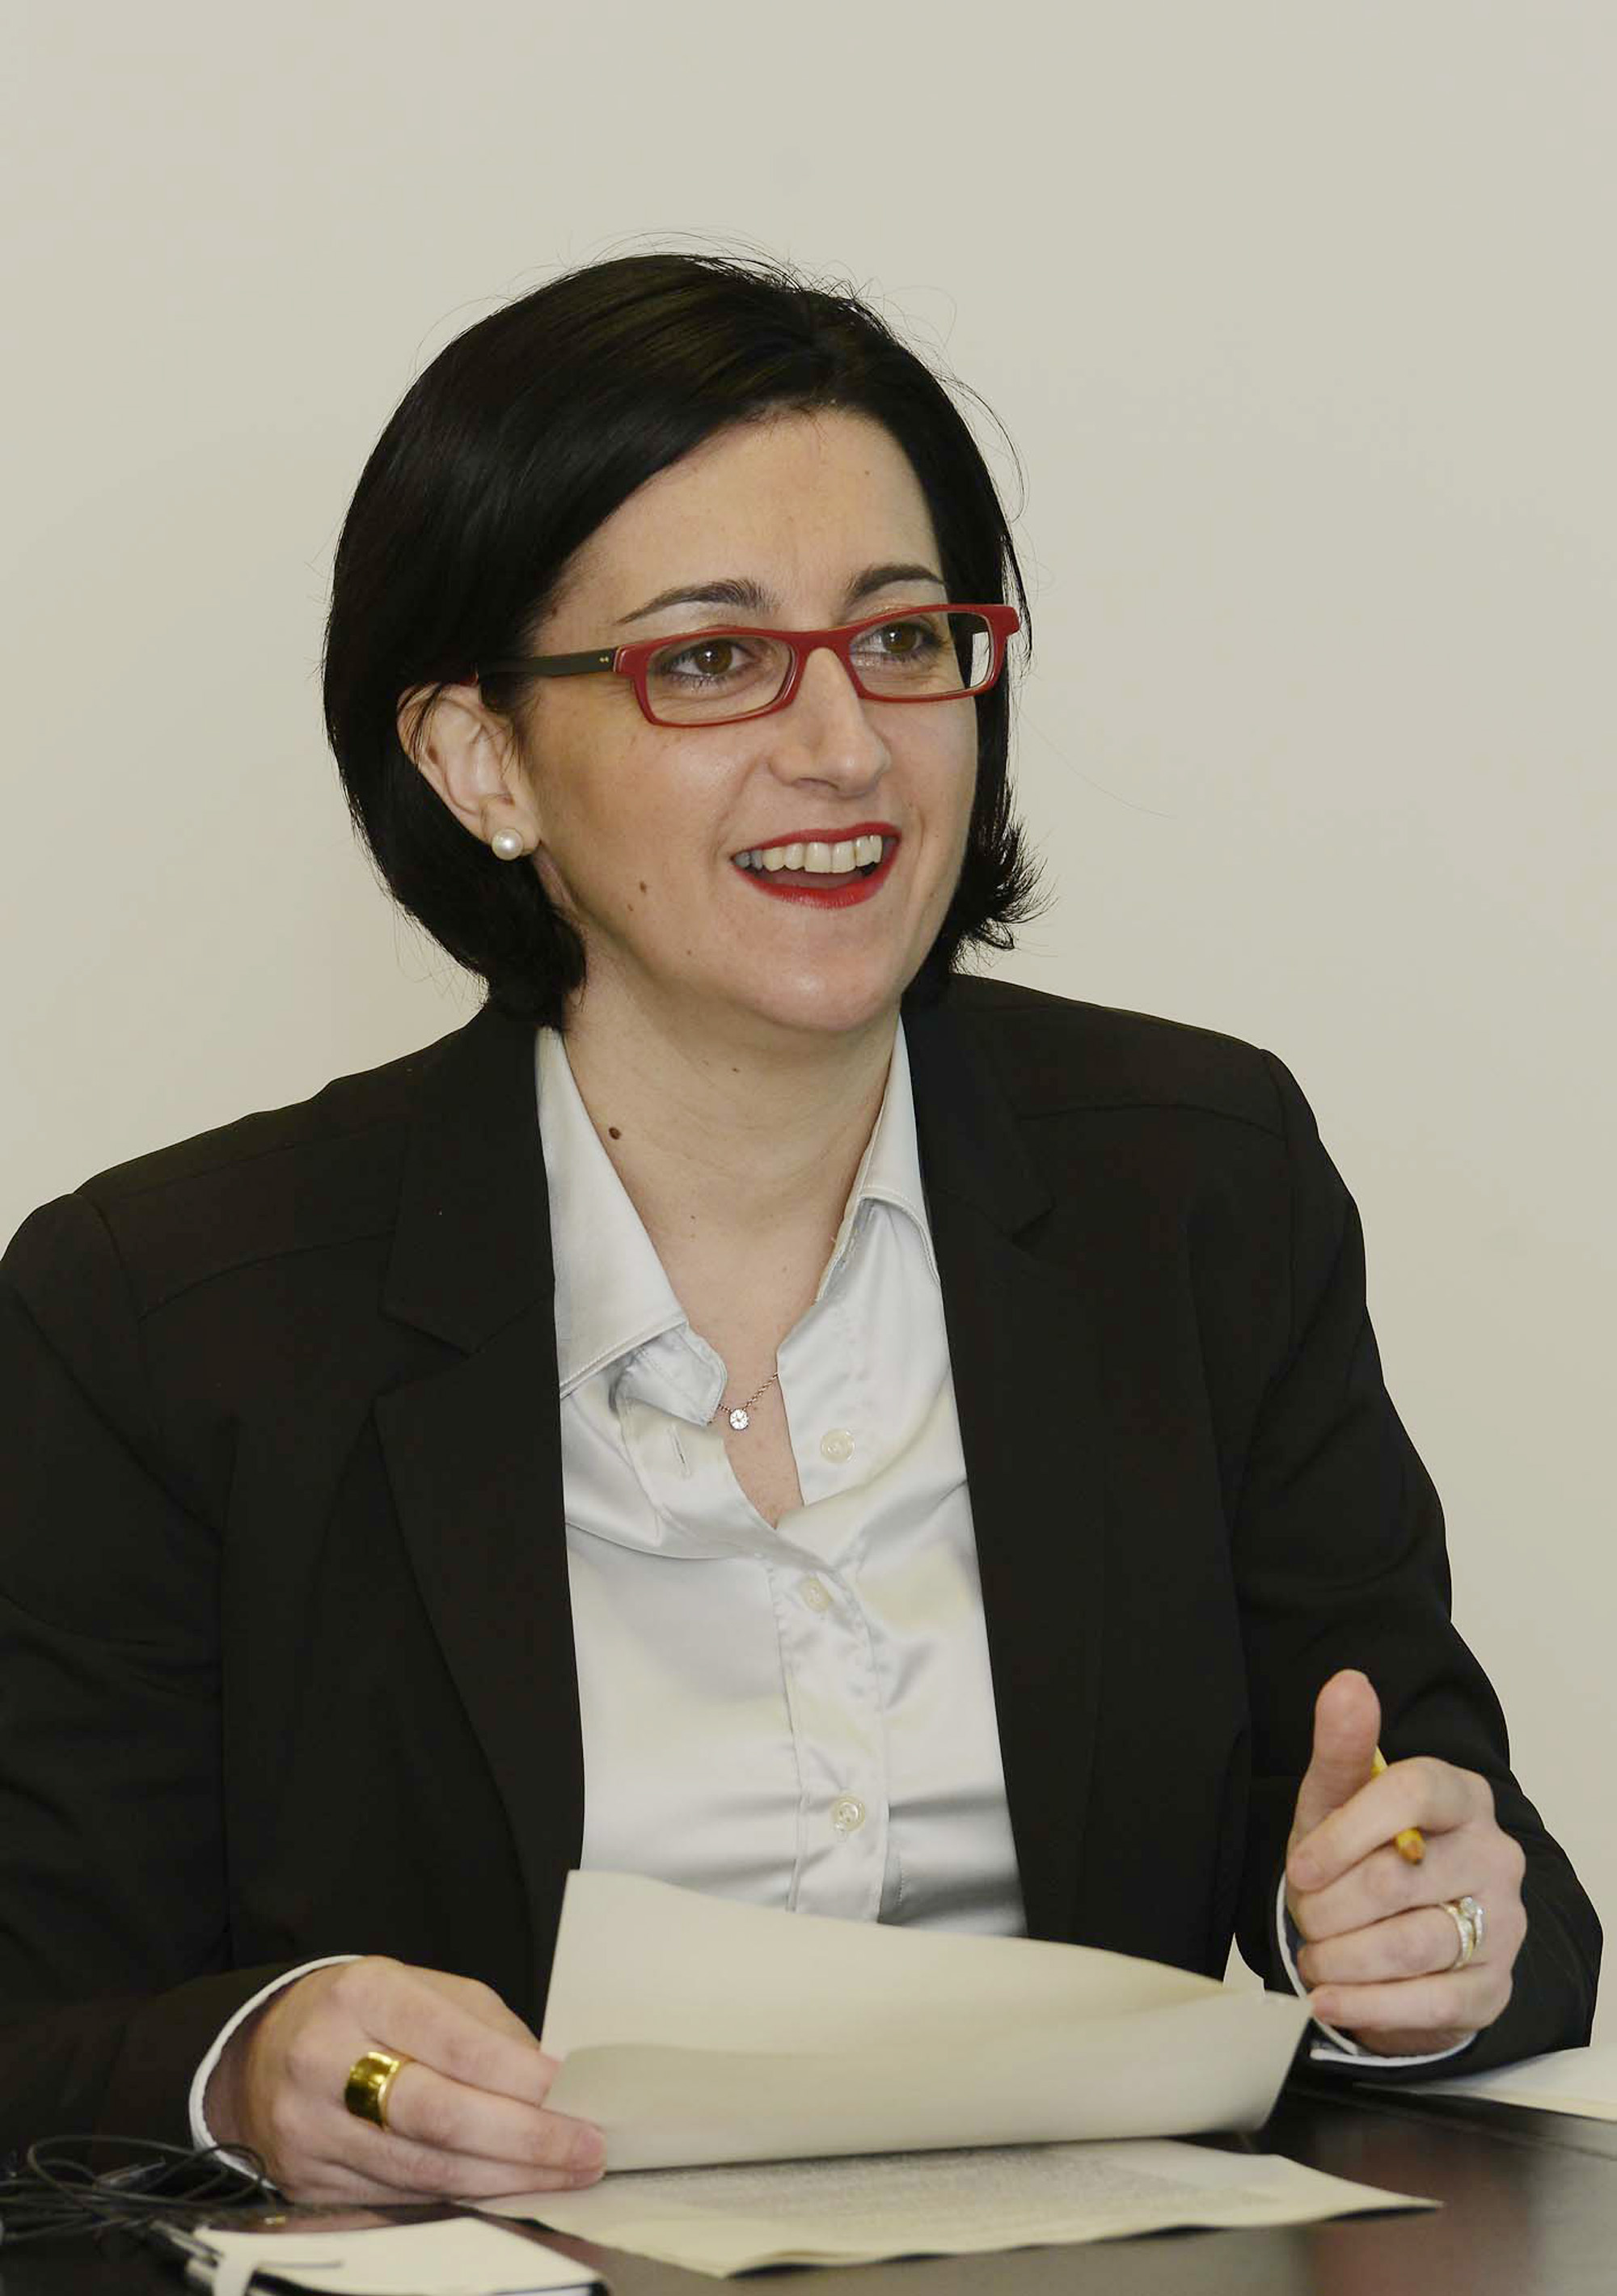 Sara Vito (Assessore regionale Ambiente ed Energia) durante la riunione della Giunta regionale. (Udine 17/10/13)